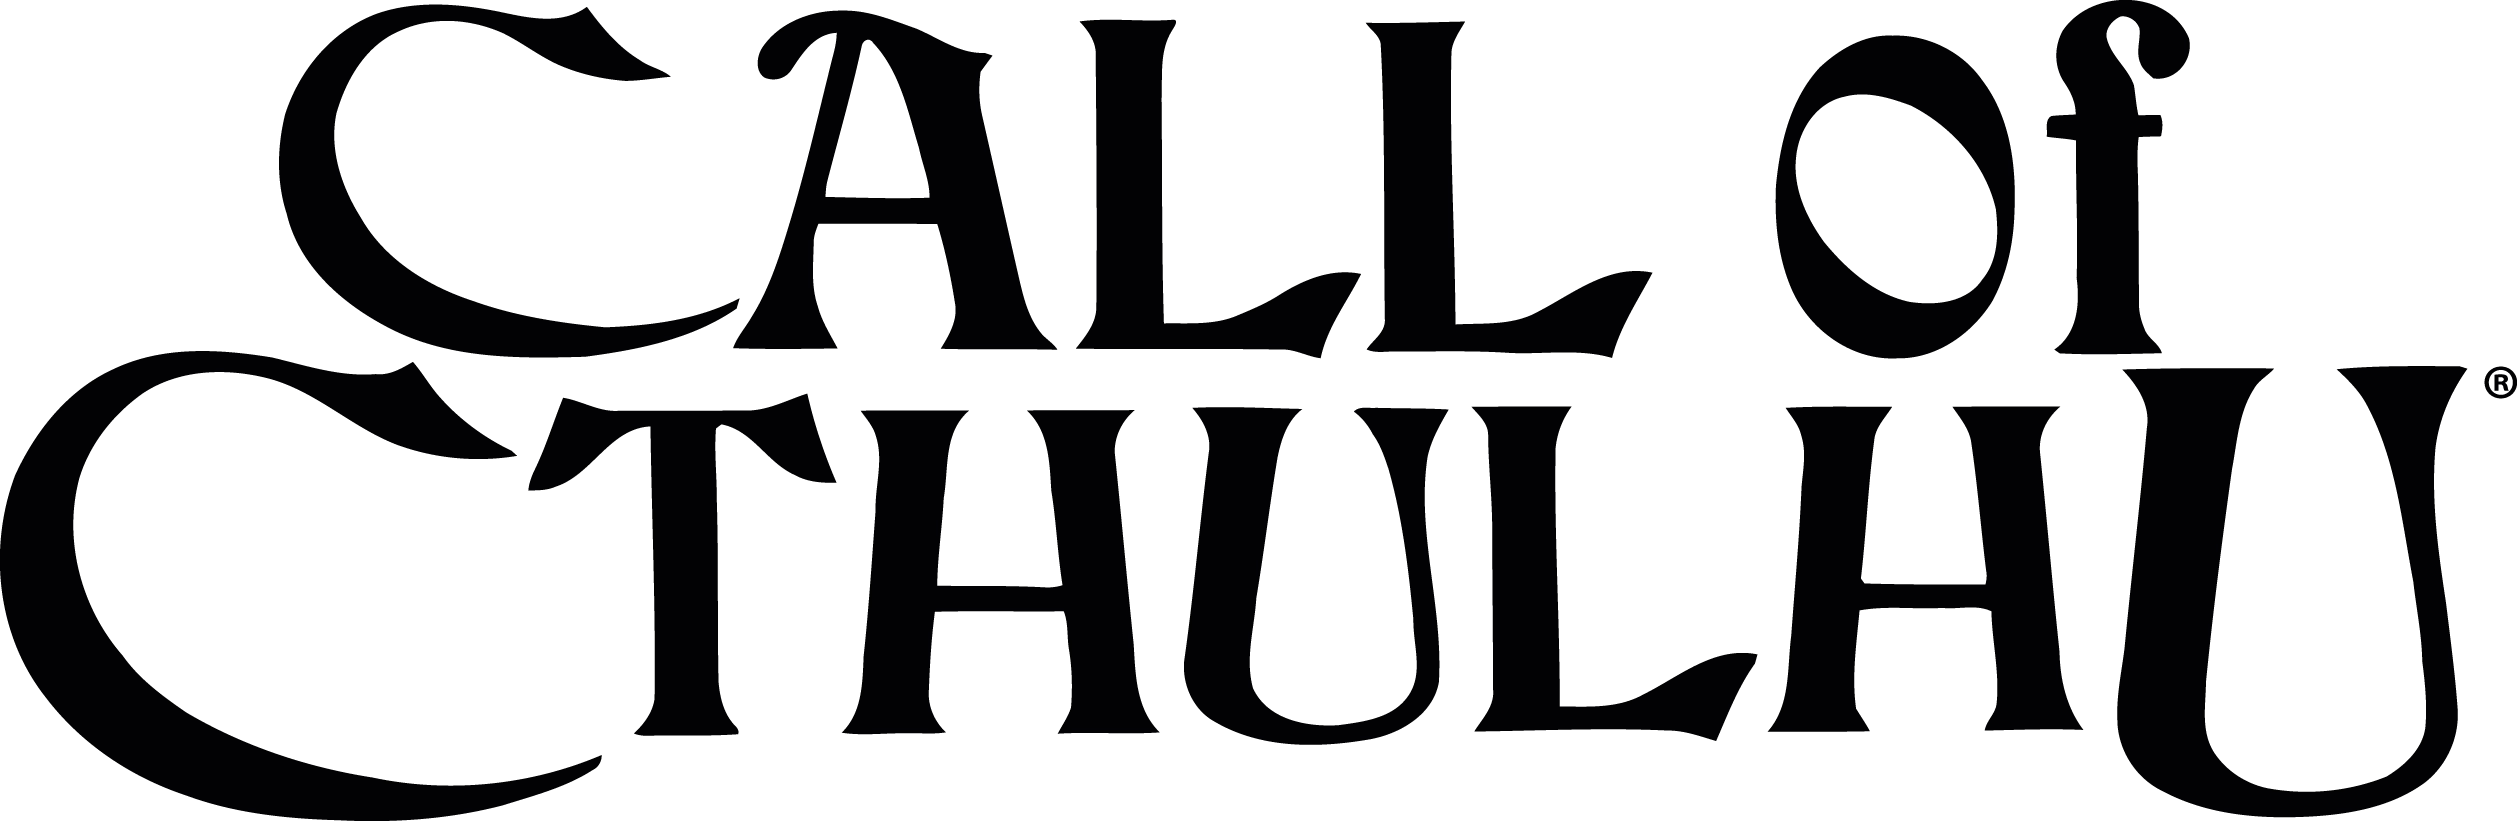 логотип Call of Cthulhu